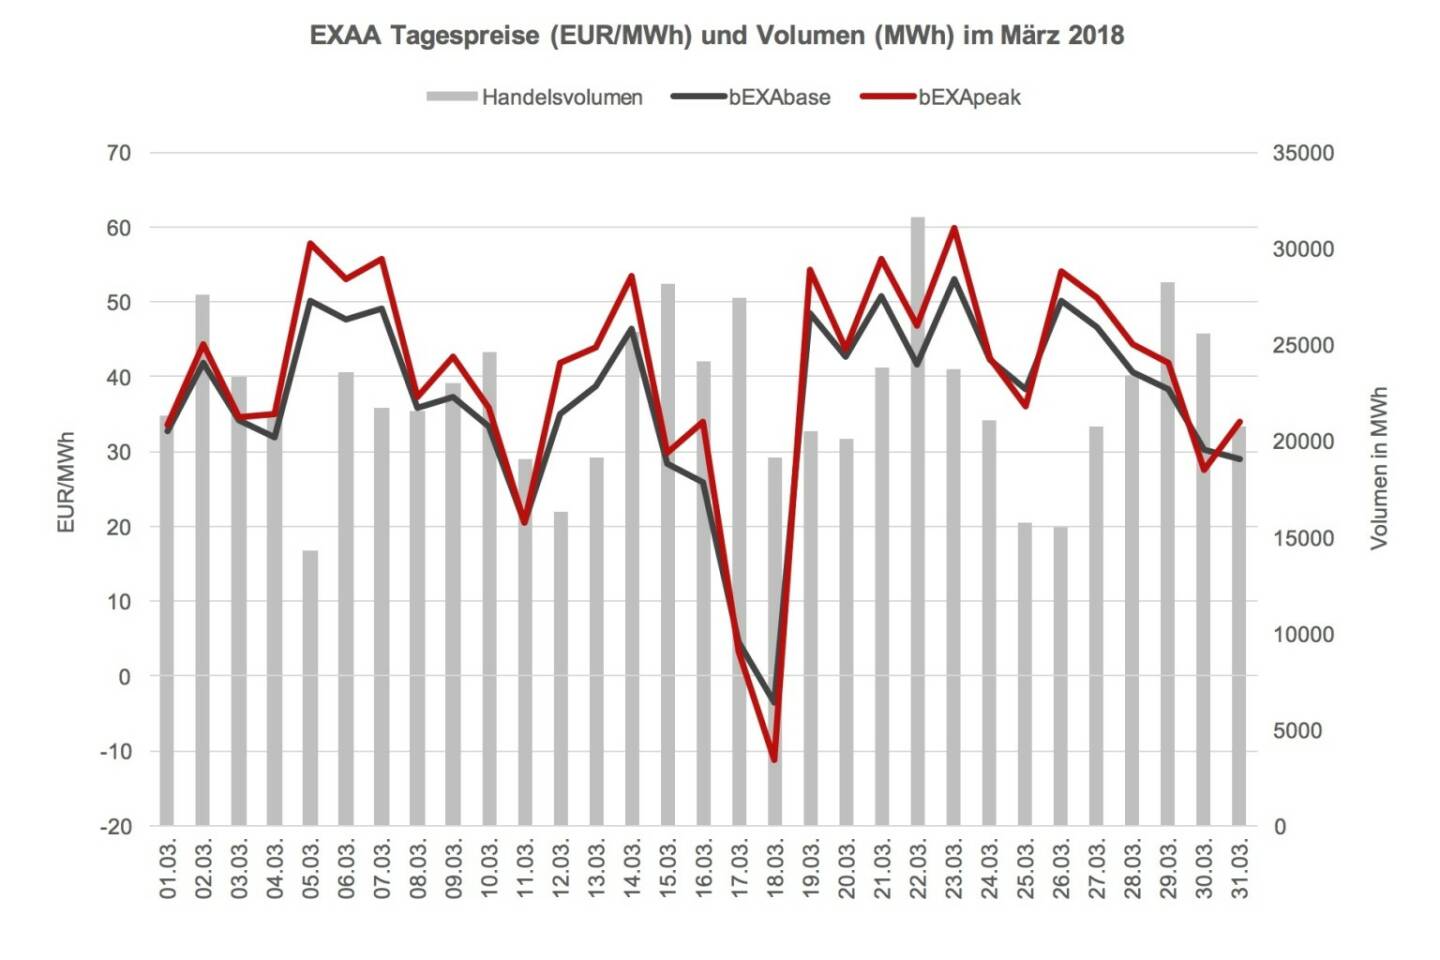 Das Preisniveau ist im März 2018 im Monatsmittel mit 36,85 EUR/MWh im bEXAbase (00-24 Uhr) und 39,90 EUR/MWh im bEXApeak (09-20 Uhr) im Vergleich zum Februar 2018 (40,15 bEXAbase bzw. 44,23 bEXApeak) deutlich gesunken. Im März 2017 waren die Preise mit 31,47 EUR/MWh im bEXAbase bzw. 33,74 EUR/MWh im bEXApeak dann noch eine Spur niedriger.